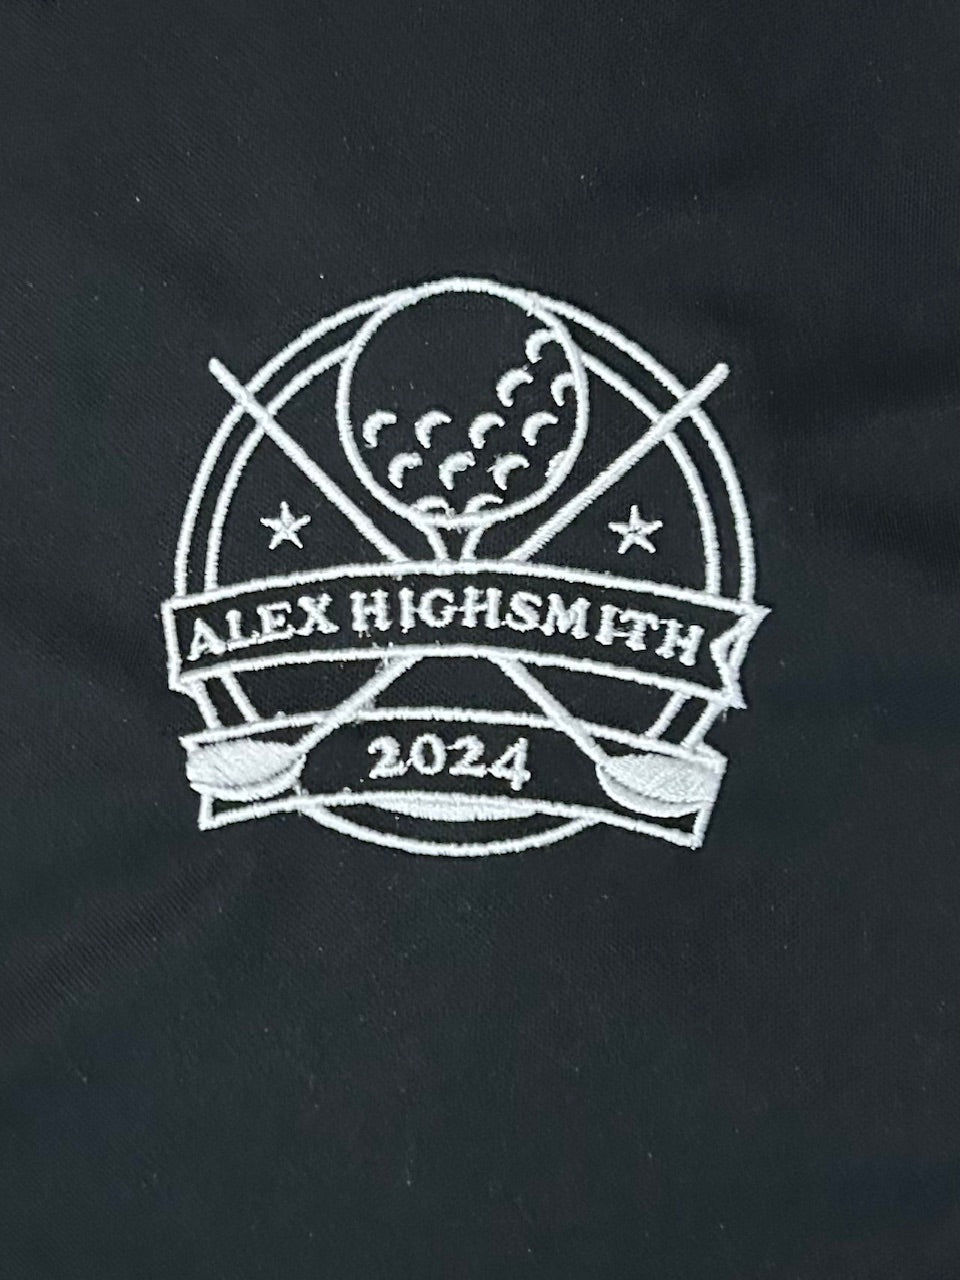 Highsmith Golf Nike polo shirts (2024)